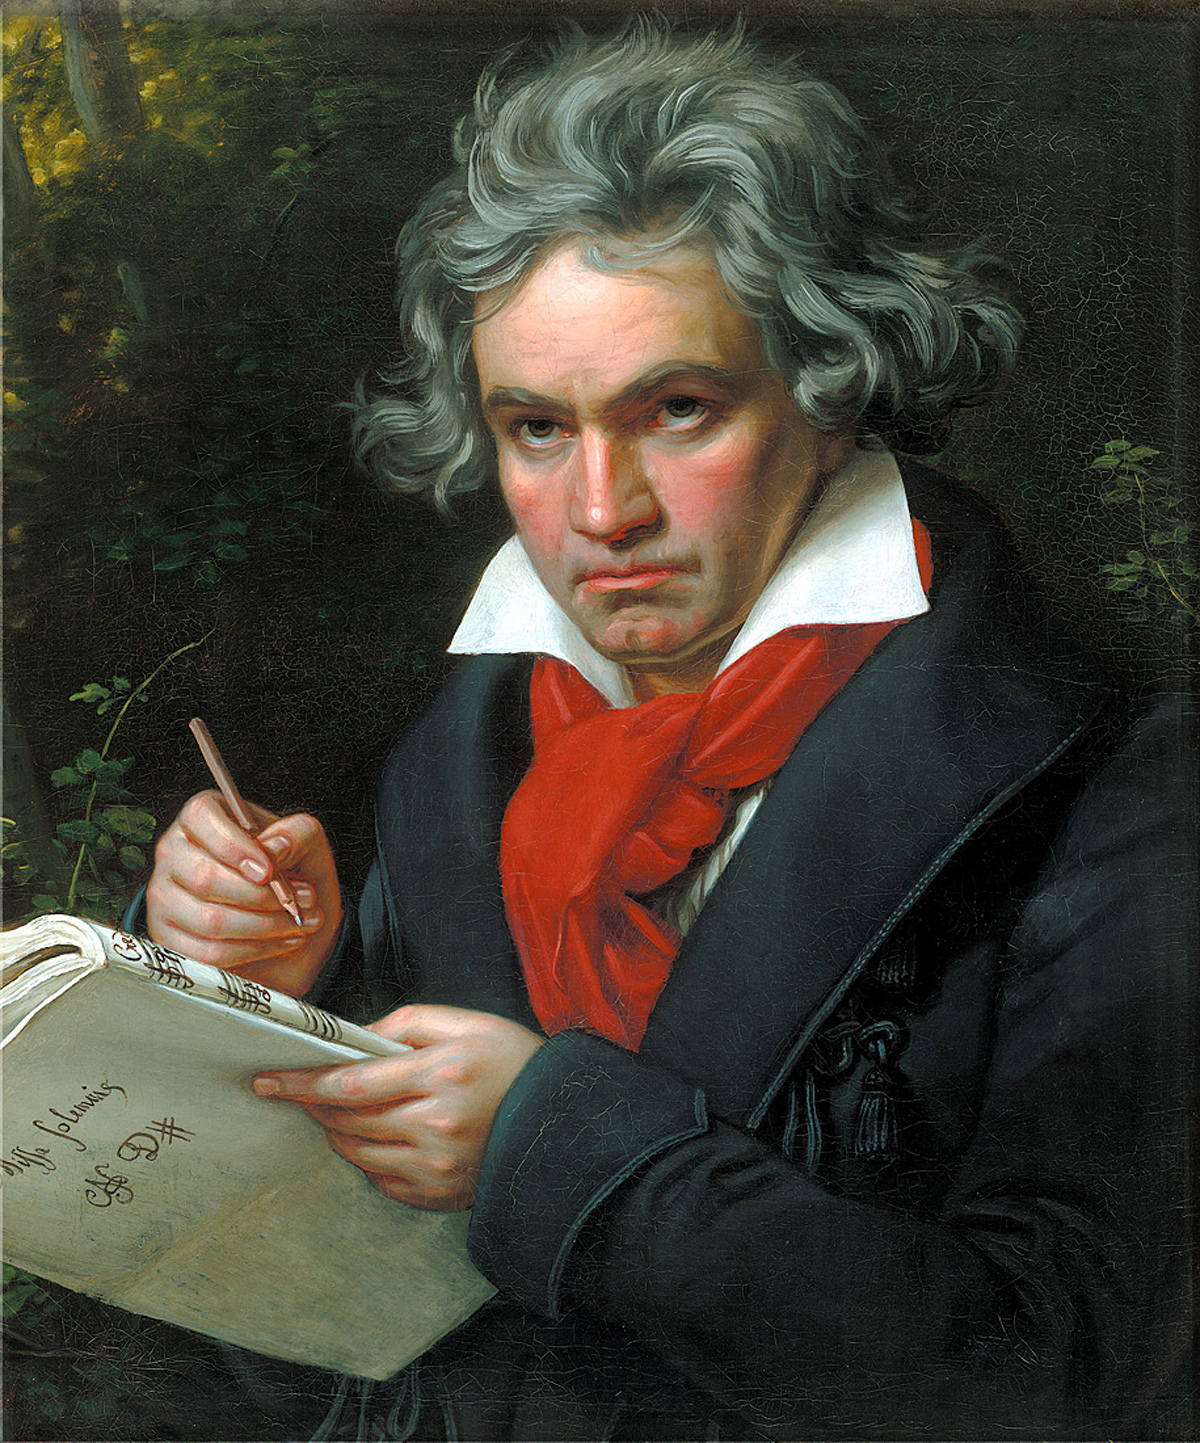 Salt: главное здесь, остальное по вкусу - Людвиг ван Бетховен, портрет работы Карла Штилера